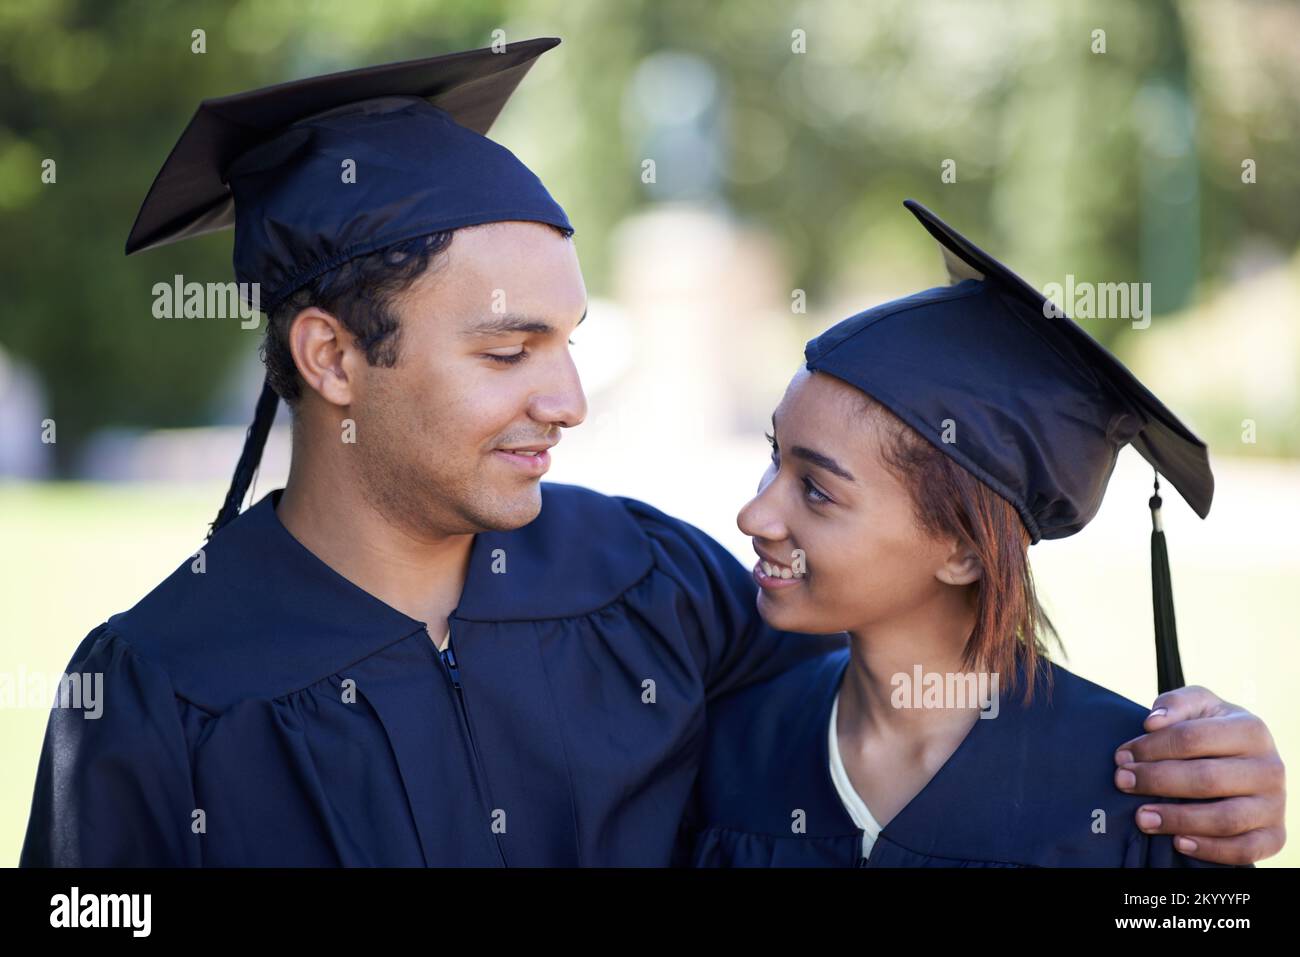 Wir haben zusammen den Abschluss gemacht. Ein glückliches Paar, das zusammen seinen Abschluss macht. Stockfoto